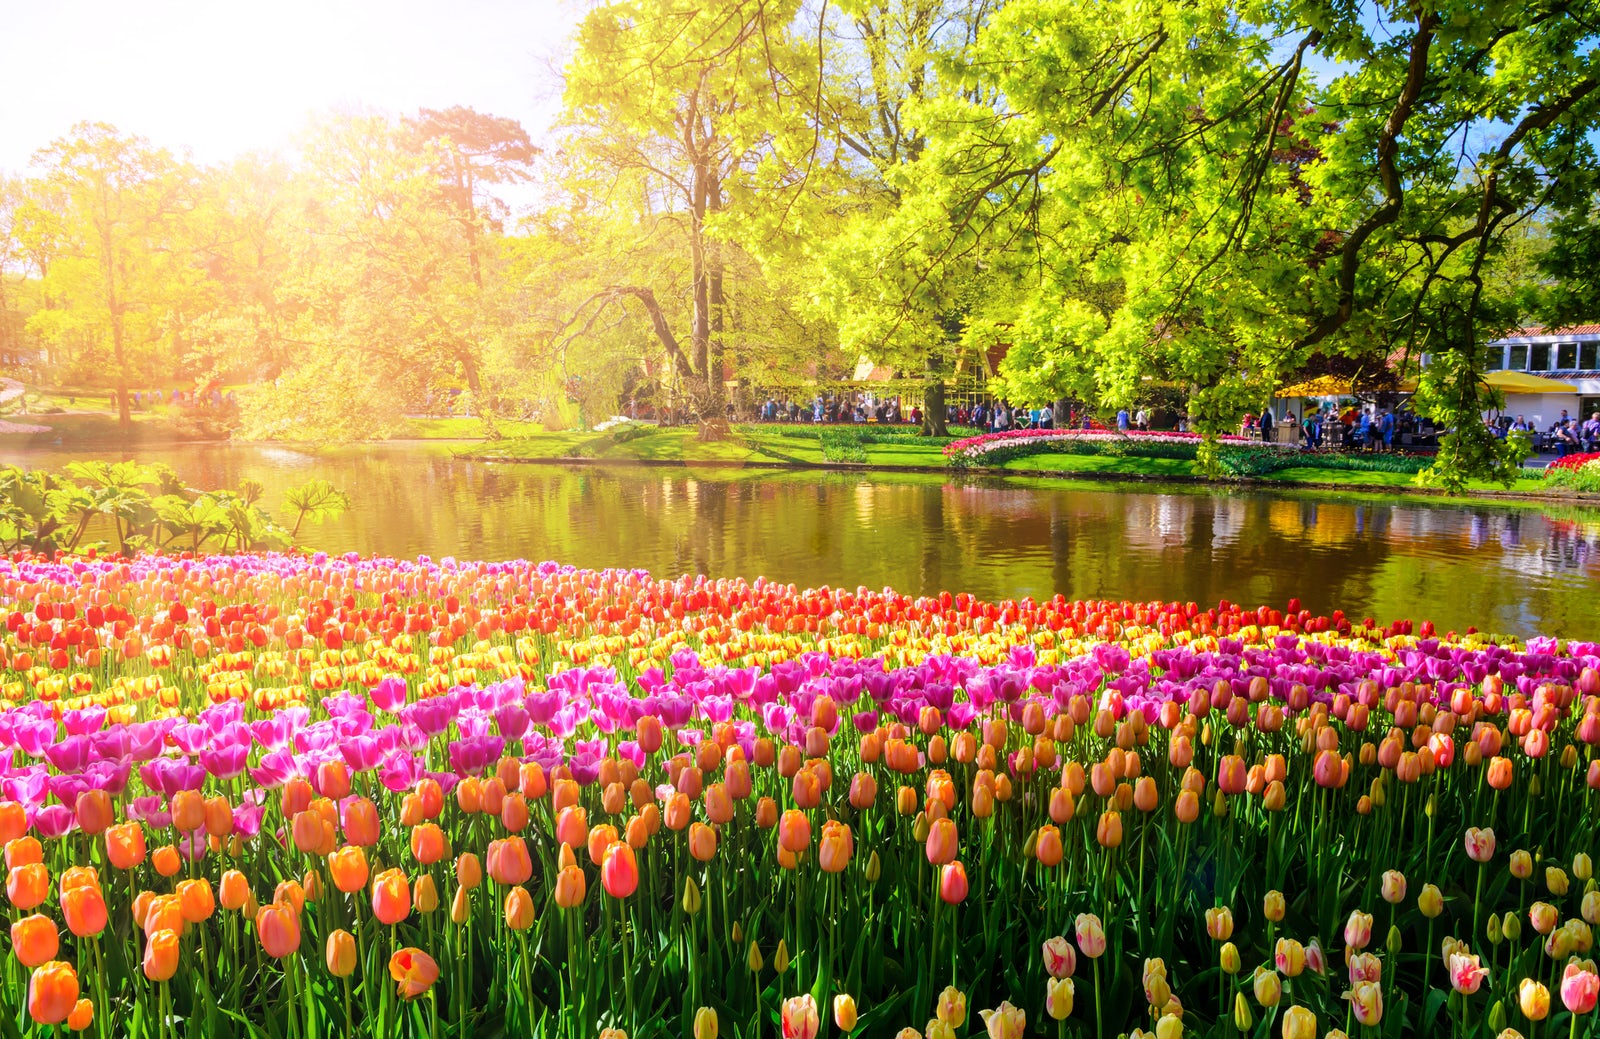 É uma paisagem em um dia ensolararado. No primeiro plano da imagem há uma série de flores do tipo tulipa, com diferentes cores, como laranja, rosa e amarela. No segundo plano, há um lago com pessoas e grandes árvores ao fundo, na outra margem.